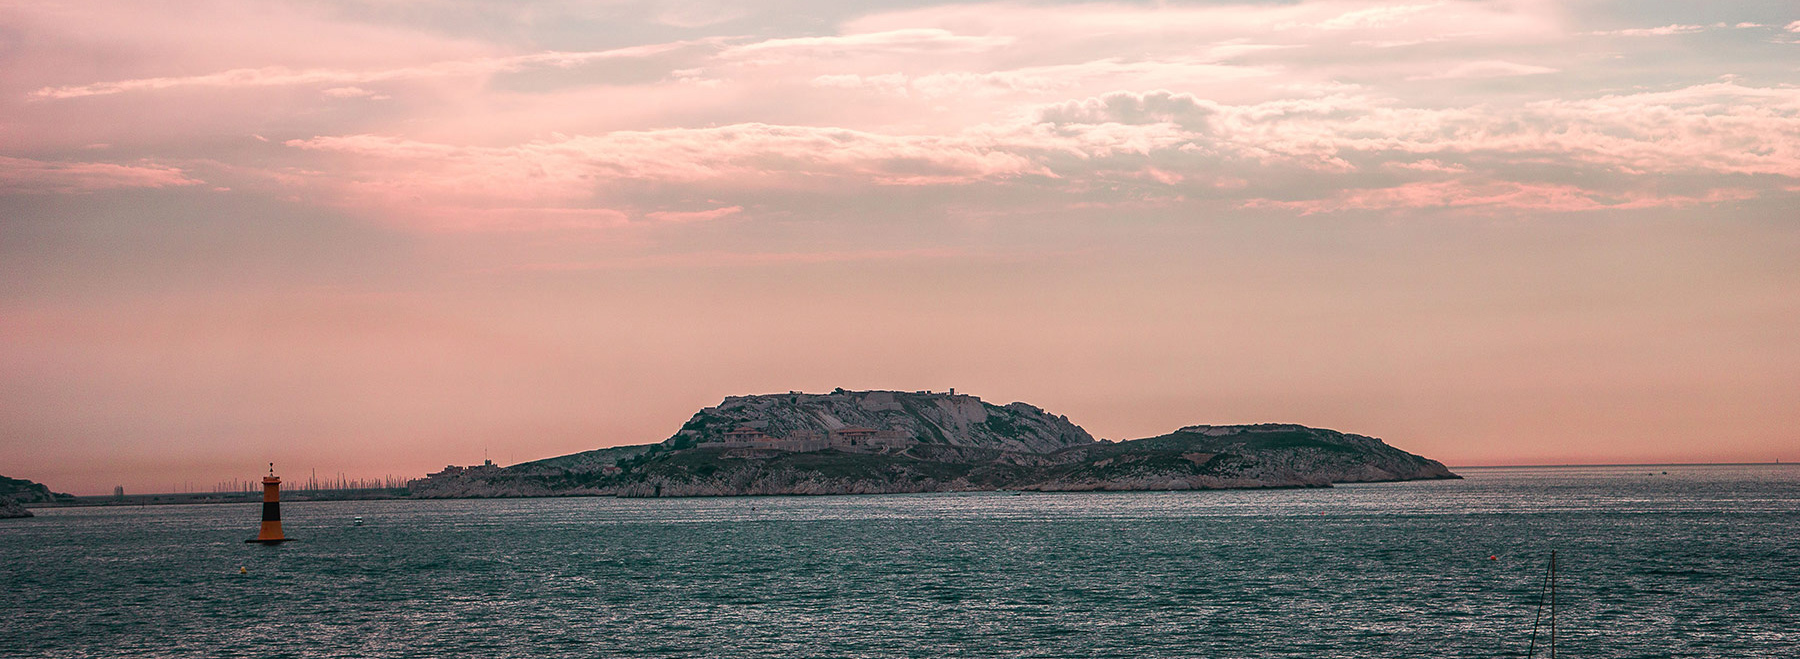 Oh el mar, hermosa foto de las islas Frioul frente a la costa de Marsella, una ciudad a la que Stėfāno tiene mucho cariño